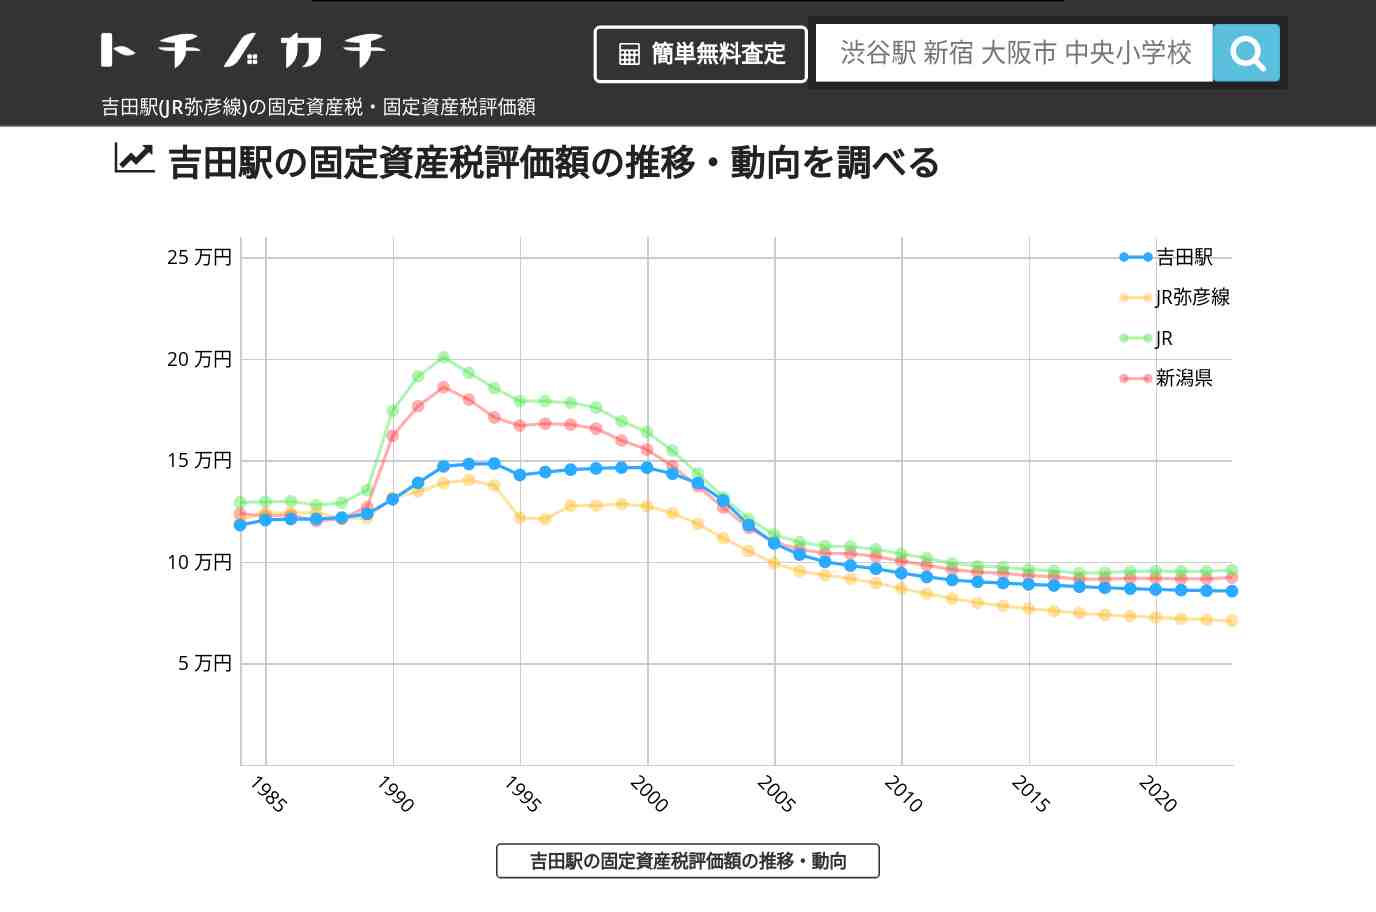 吉田駅(JR弥彦線)の固定資産税・固定資産税評価額 | トチノカチ